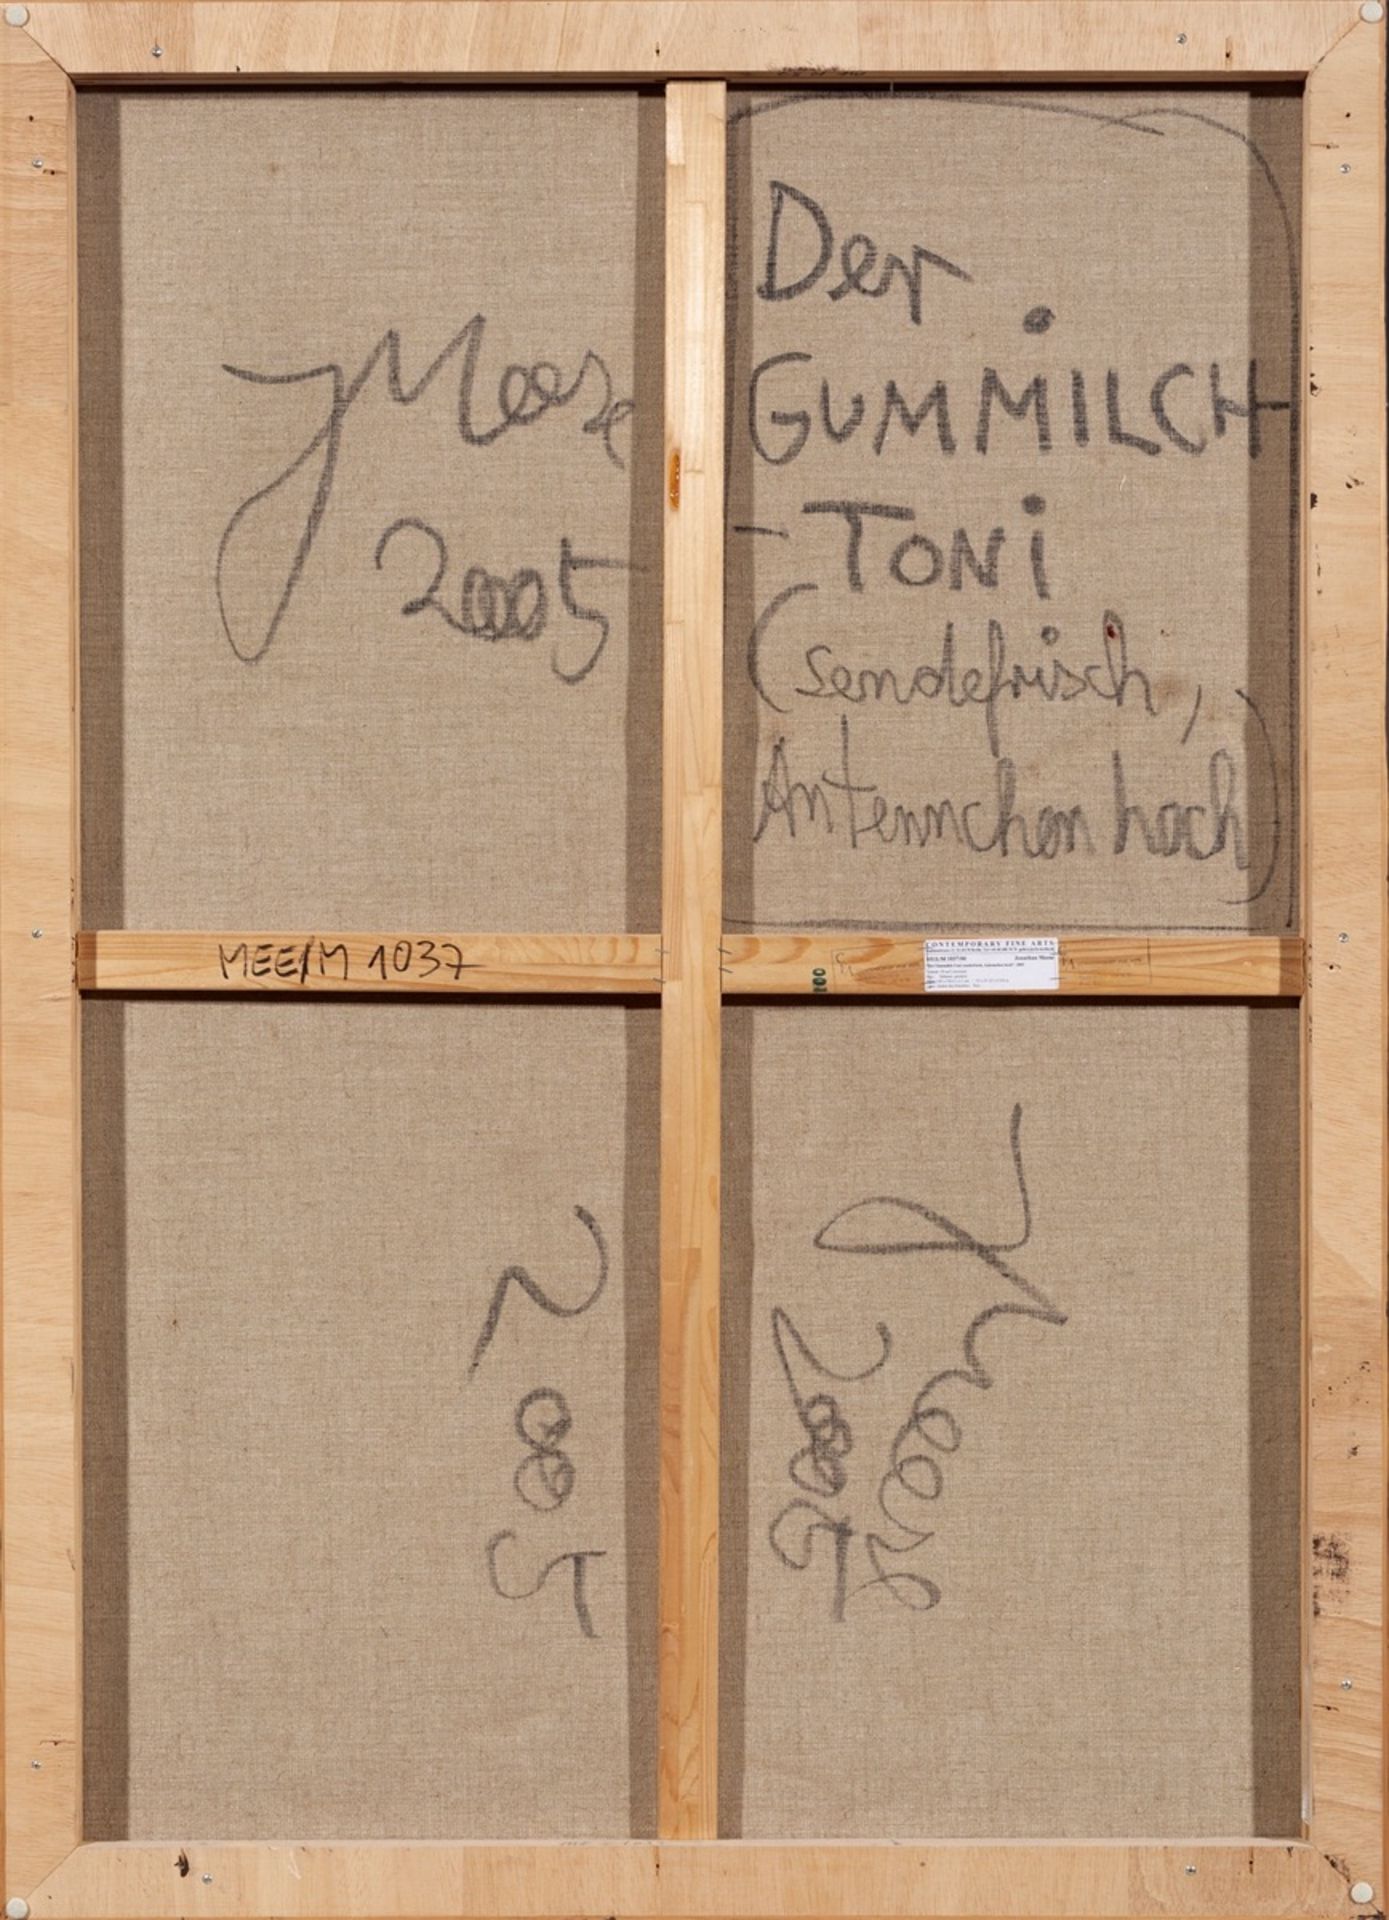 Jonathan Meese. ”Der GUMMILCH-TONI (sendefrisch, Antennchen hoch)”. 2005 - Image 2 of 2